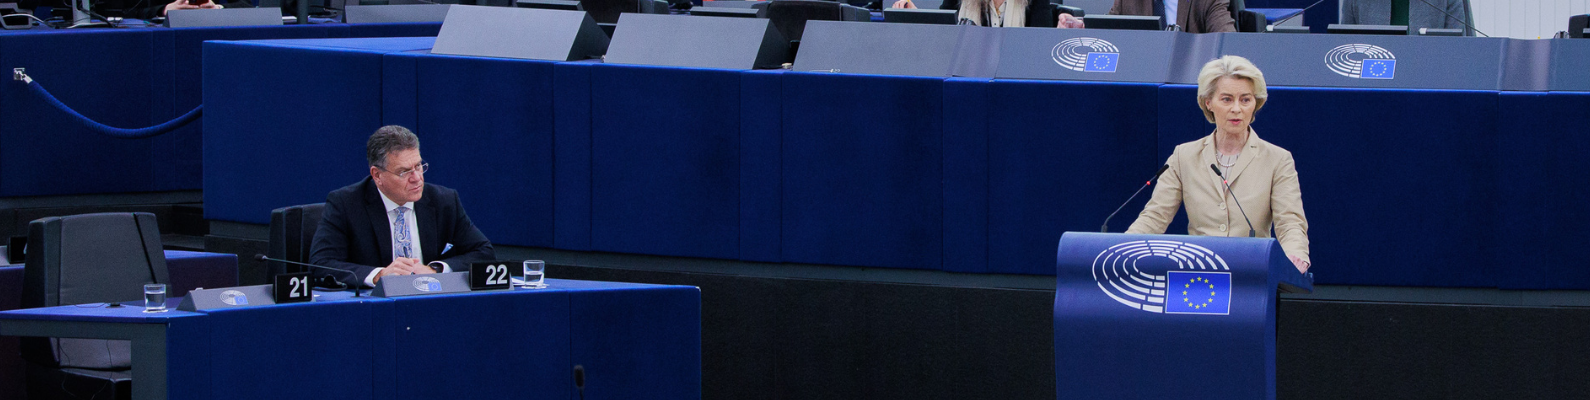 Ursula von der Leyen bei ihrere Rede im EU-Parlament